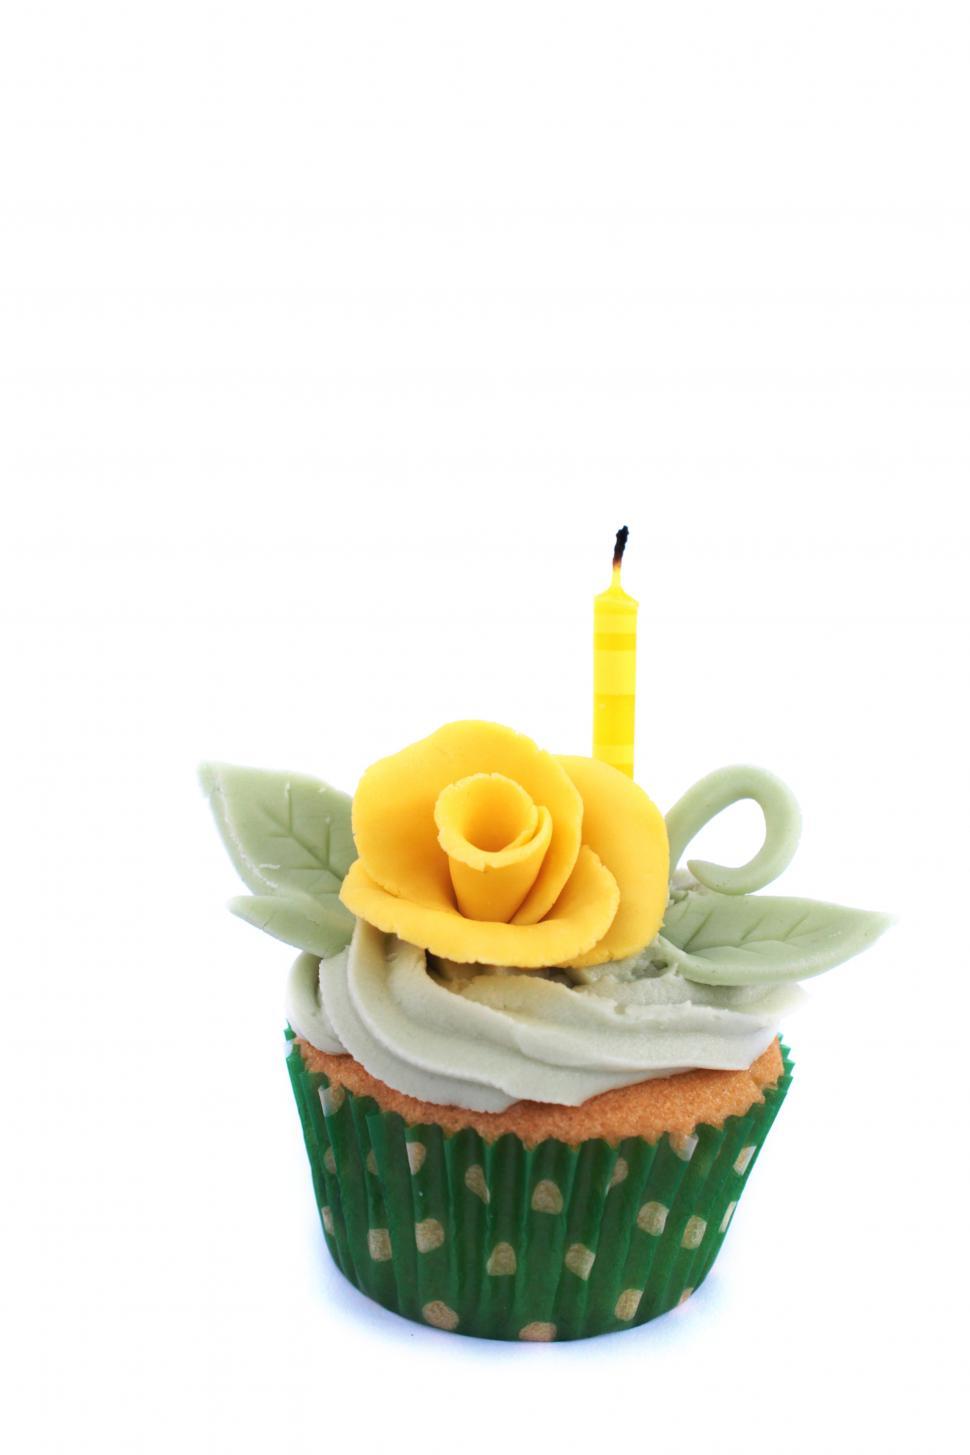 Free Image of spring cupcake 